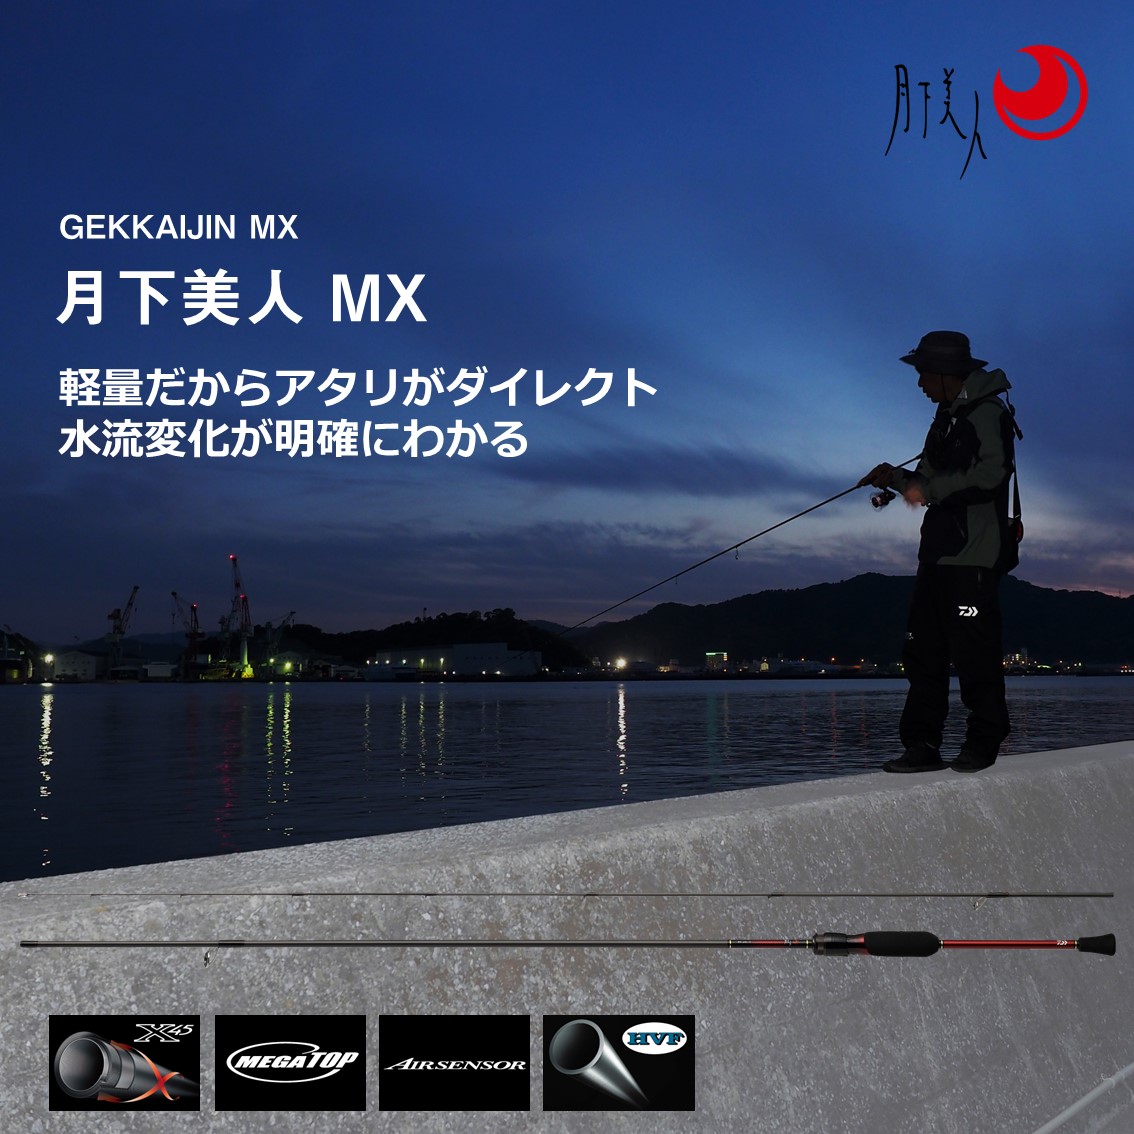 ダイワ 21 月下美人MX 83MH-T N (アジングロッド) - 釣り具の販売 